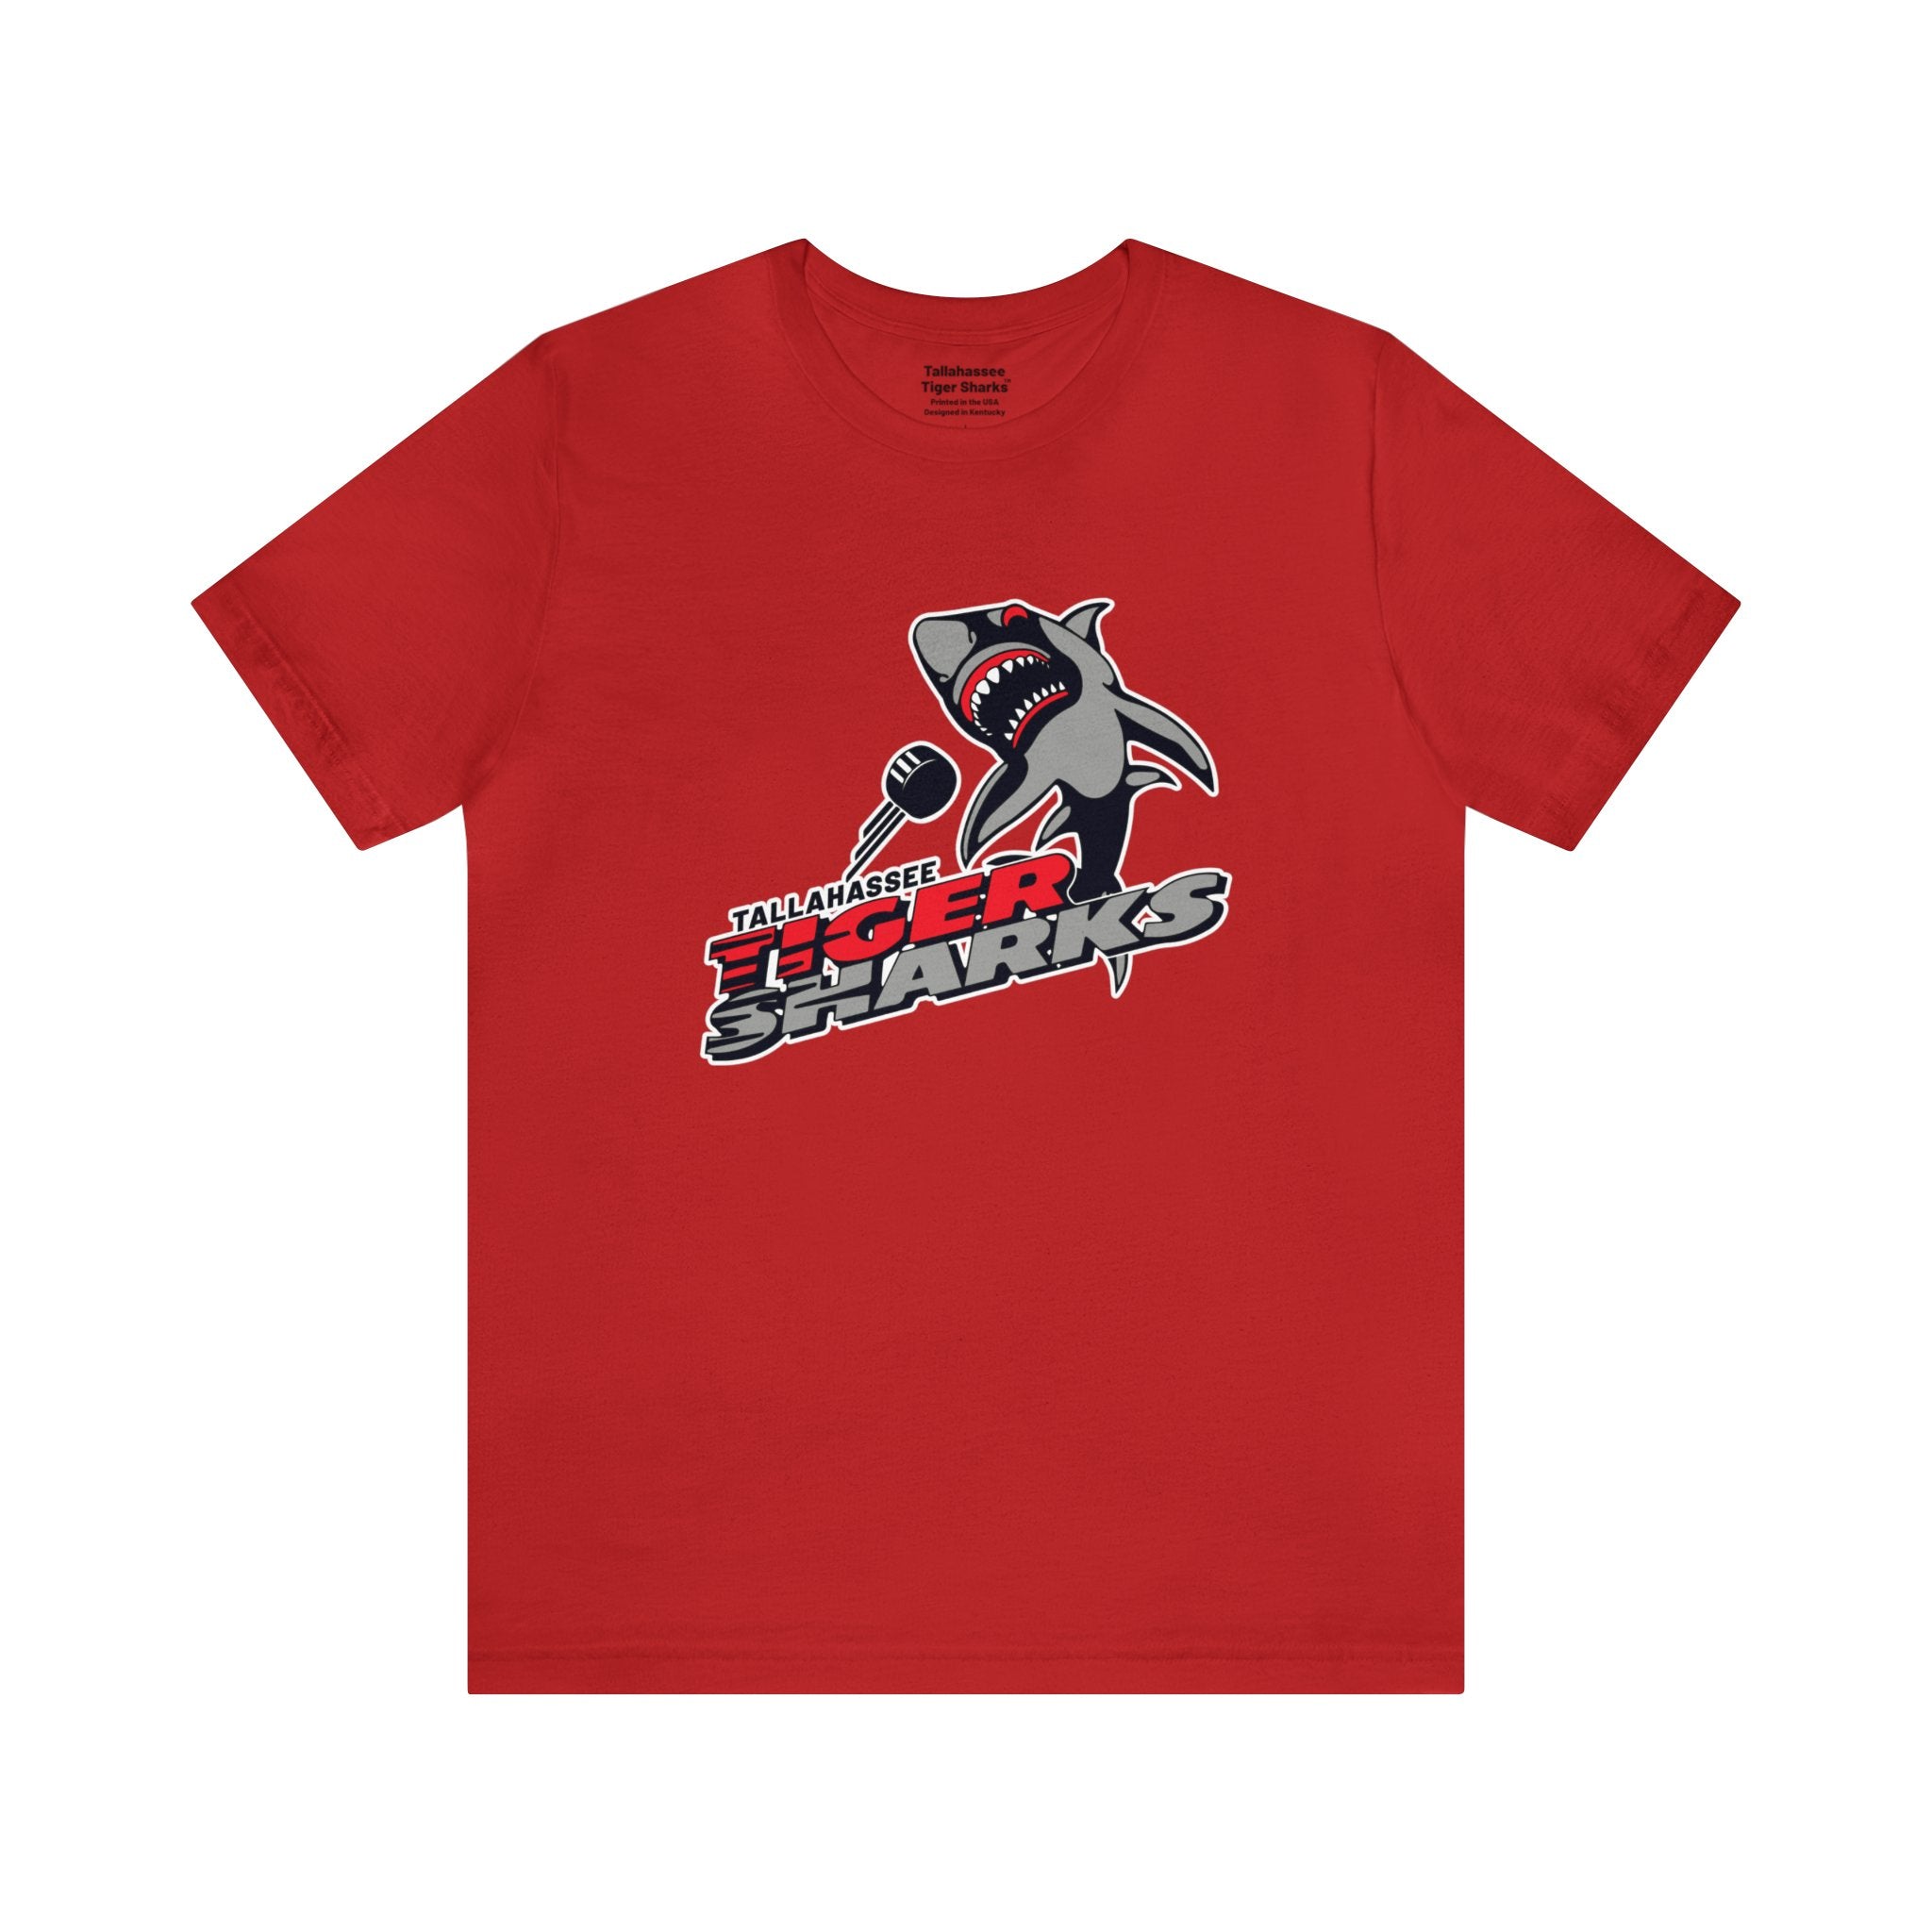 Tallahassee Tiger Sharks™ T-Shirt (Premium Lightweight)